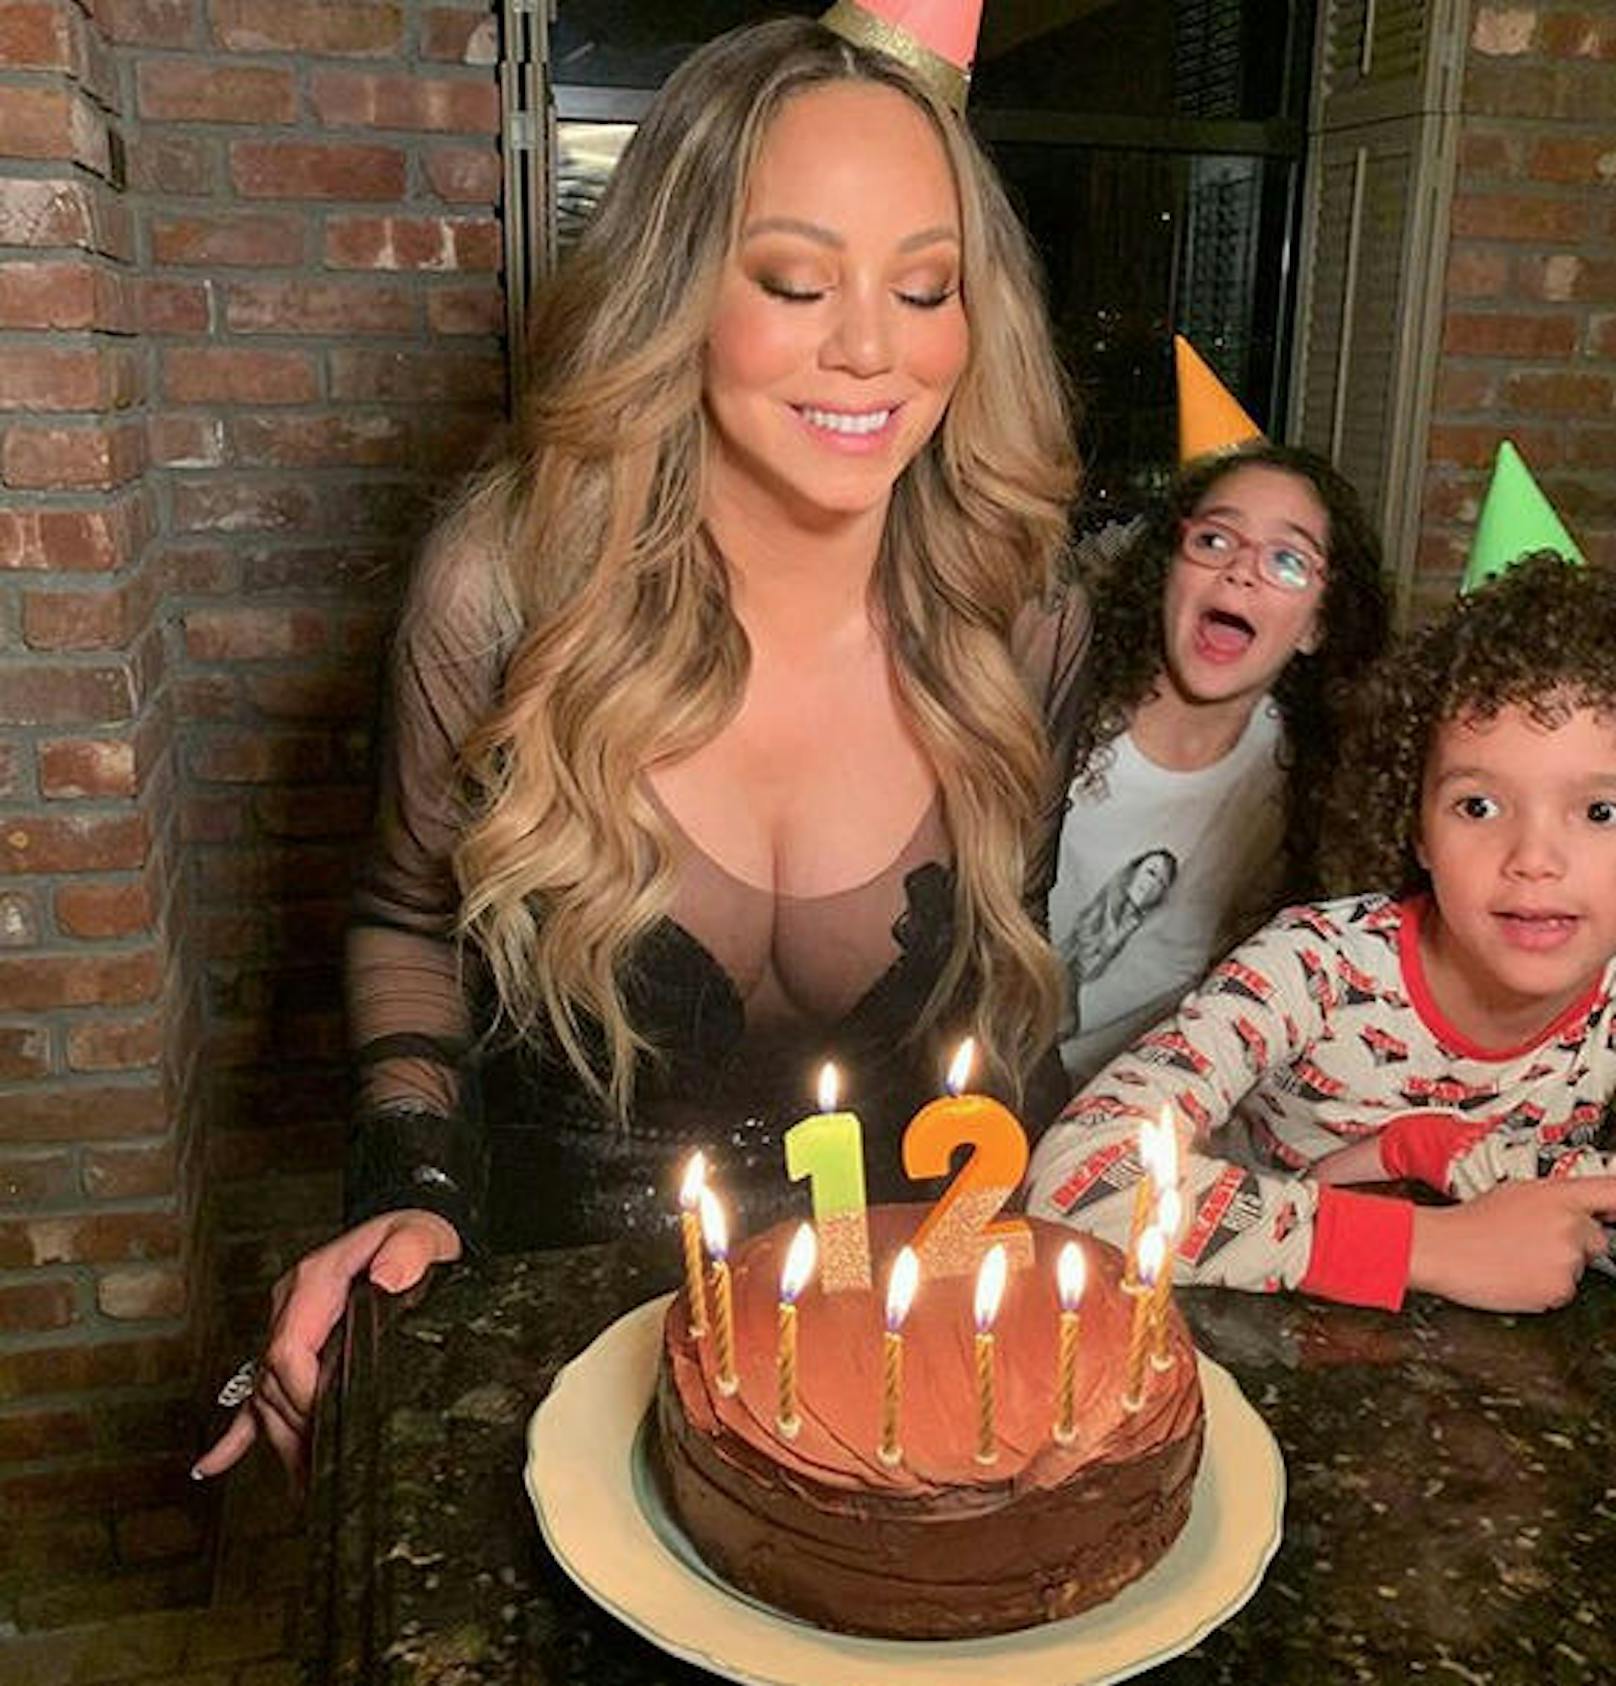 30.03.2020: Pop-Diva<strong> Mariah Carey</strong> hat am Wochenende ihren 12. (!) Geburtstag gefeiert und wünscht sich selbst alles Gute zum "ewigen 12er". Eine Schoko-Torte mit eindeutig mehr als zwölf Kalorien gab's obendrein.